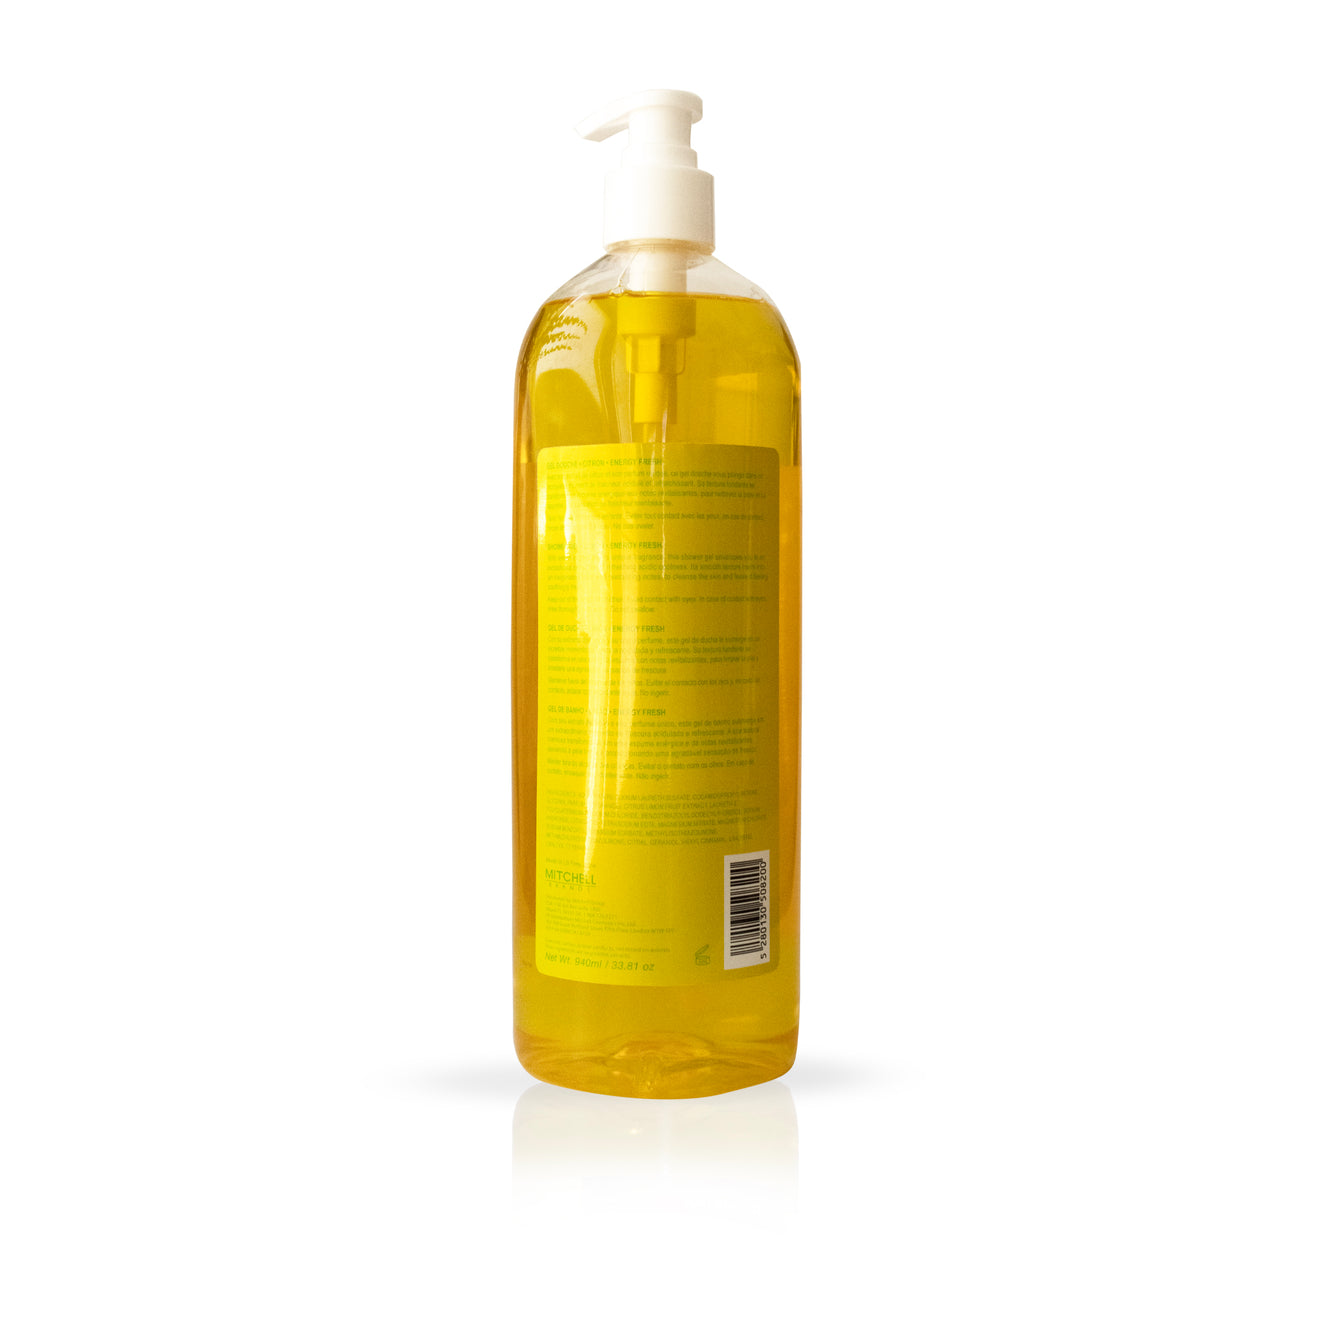 Lemonvate Shower Gel - 940ml